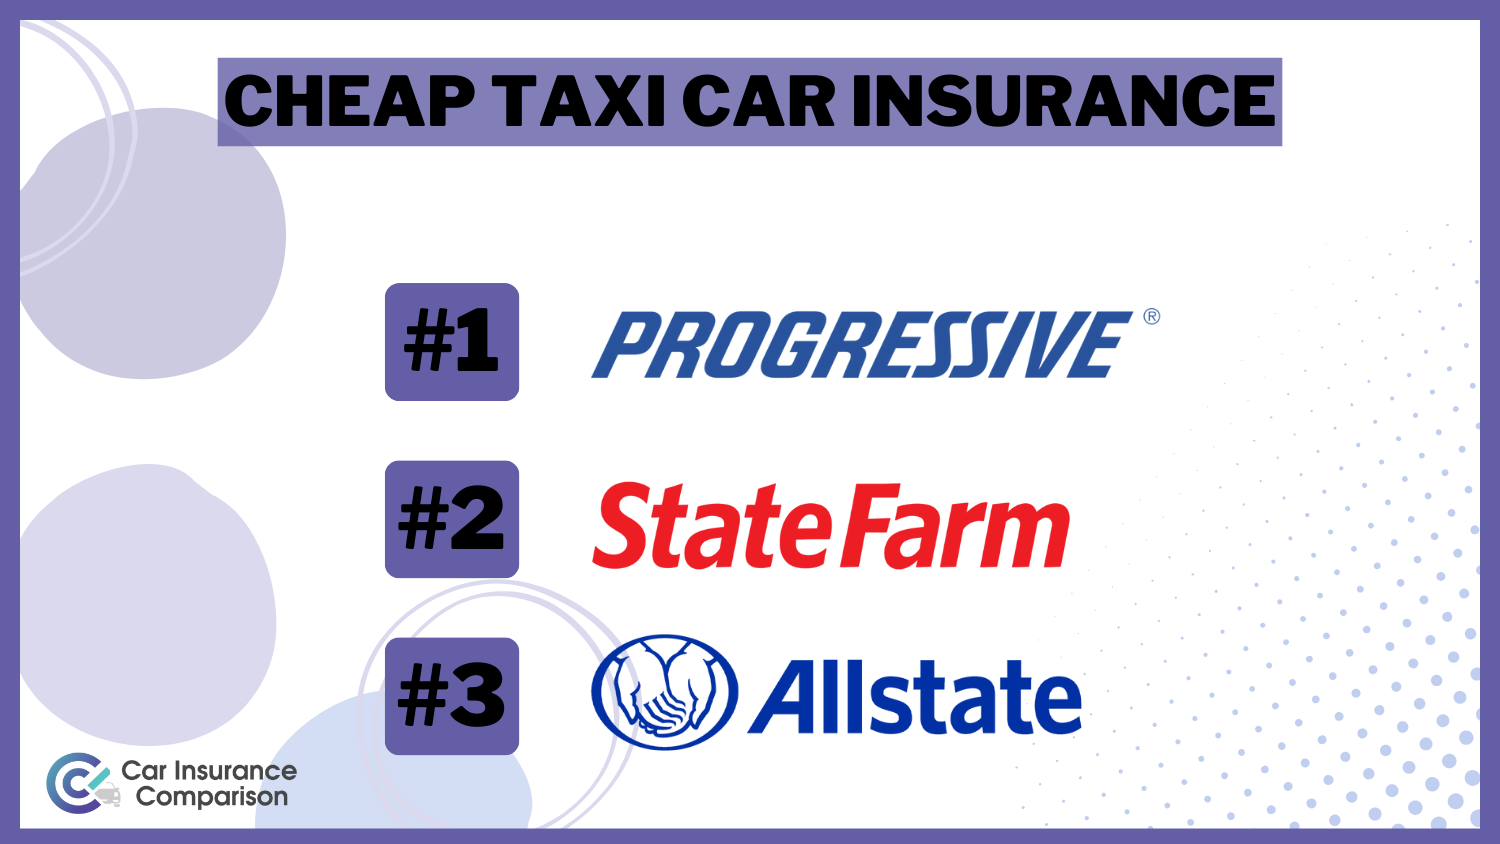 Cheap Taxi Car Insurance - Progressive, State Farm and Allstate